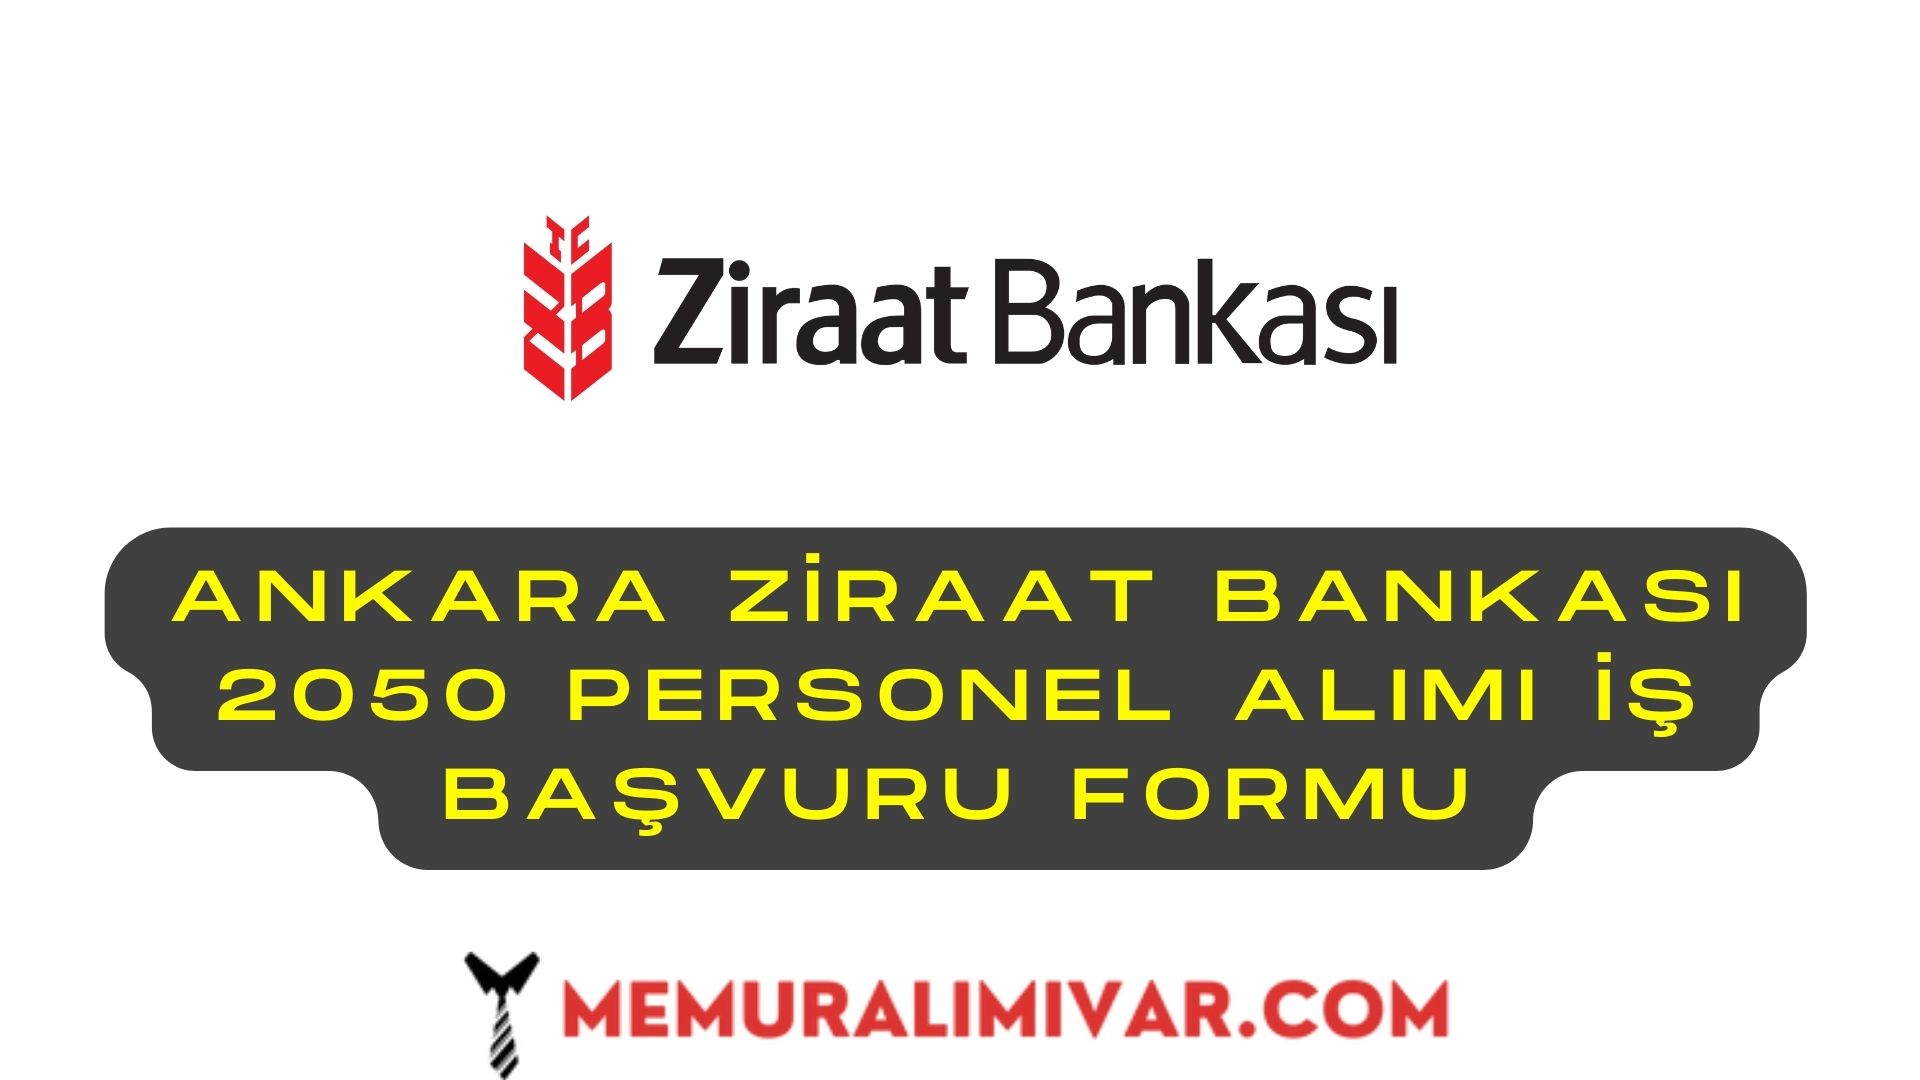 Ankara Ziraat Bankası 2050 Personel Alımı İş Başvuru Formu